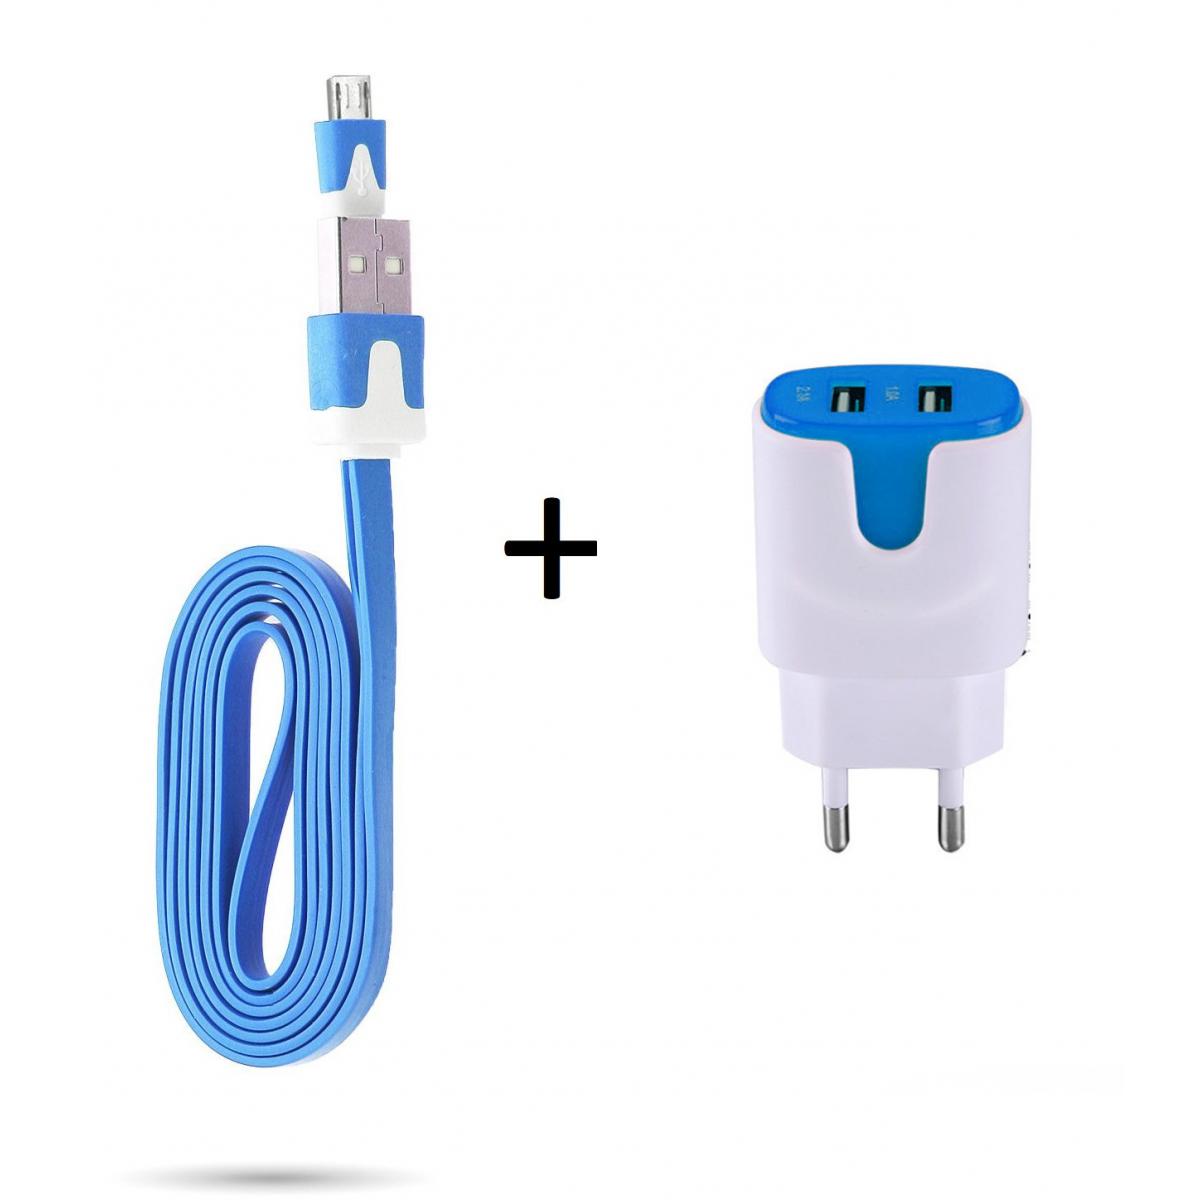 Shot - Pack Chargeur pour WIKO View 4 Lite Smartphone Micro USB (Cable Noodle 1m Chargeur + Double Prise Secteur Couleur USB) (BLEU) - Chargeur secteur téléphone